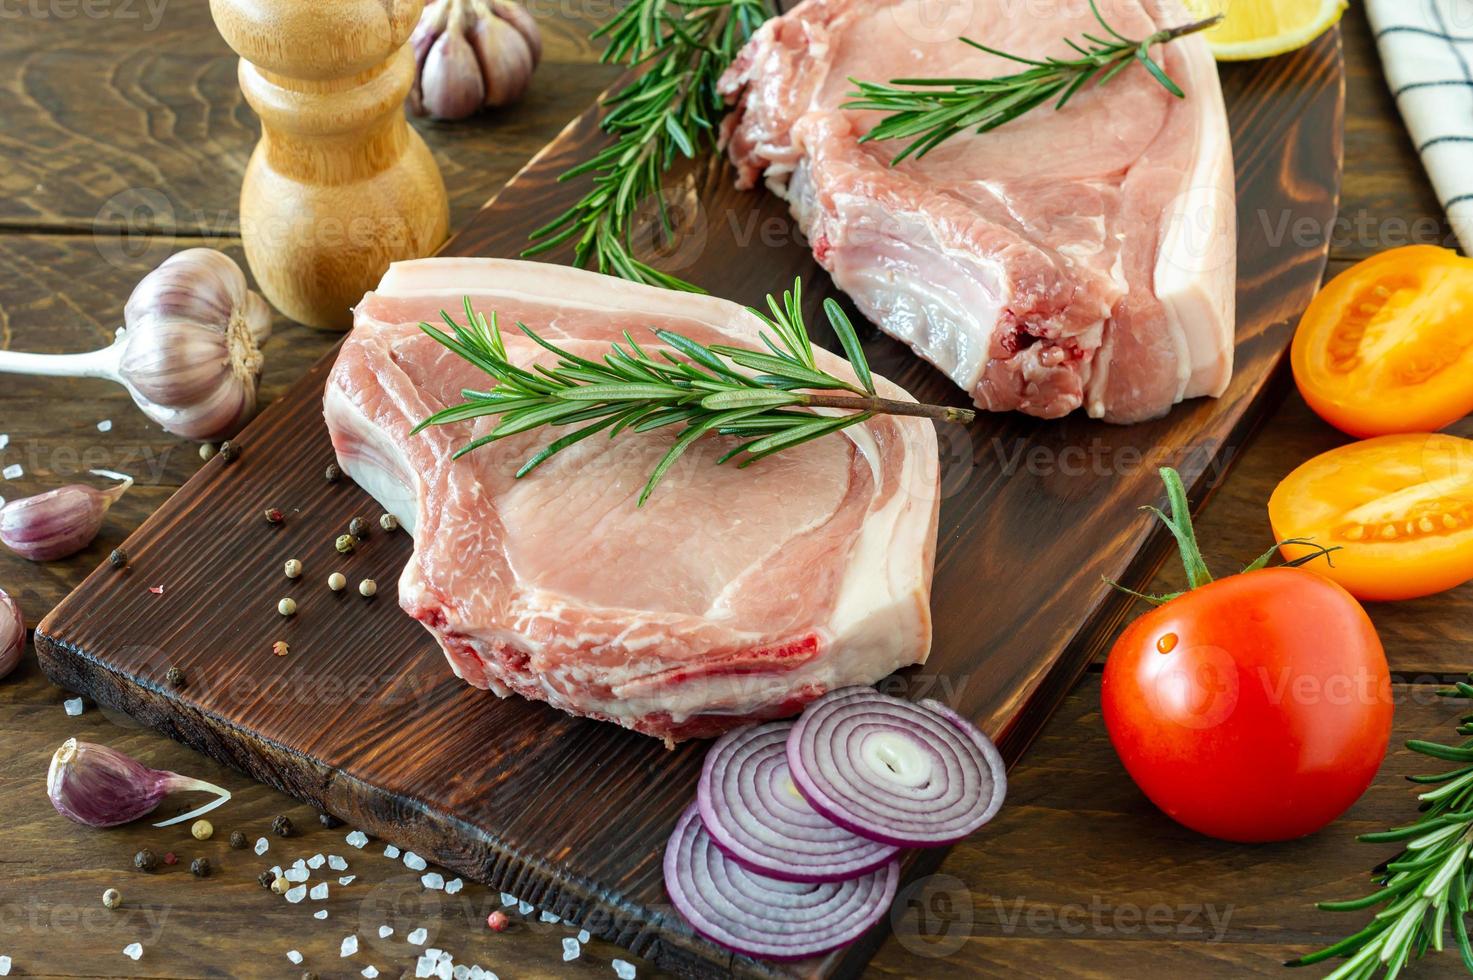 pedaços de bife de porco cru com especiarias e ervas alecrim, sal e pimenta na placa de madeira sobre fundo de madeira em estilo rústico foto